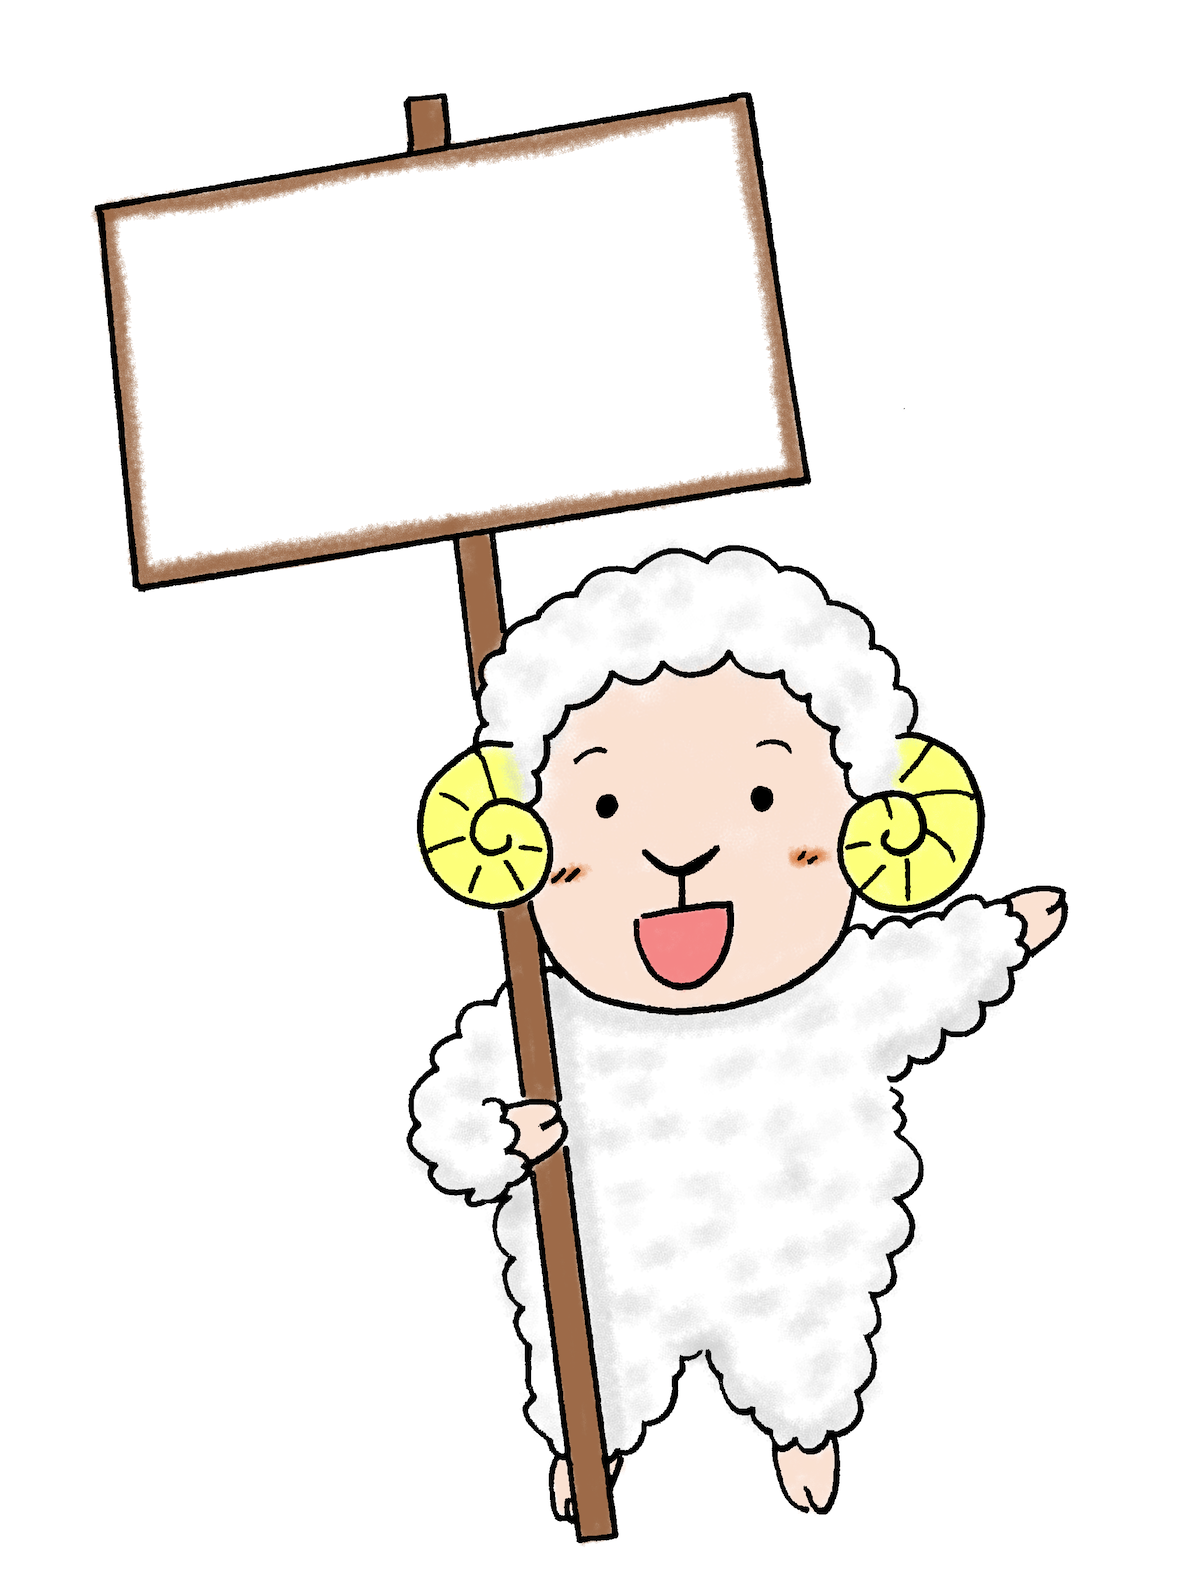 プラカードを持って笑顔の羊 ひつじ15年賀状素材 無料イラスト配布サイトマンガトップ